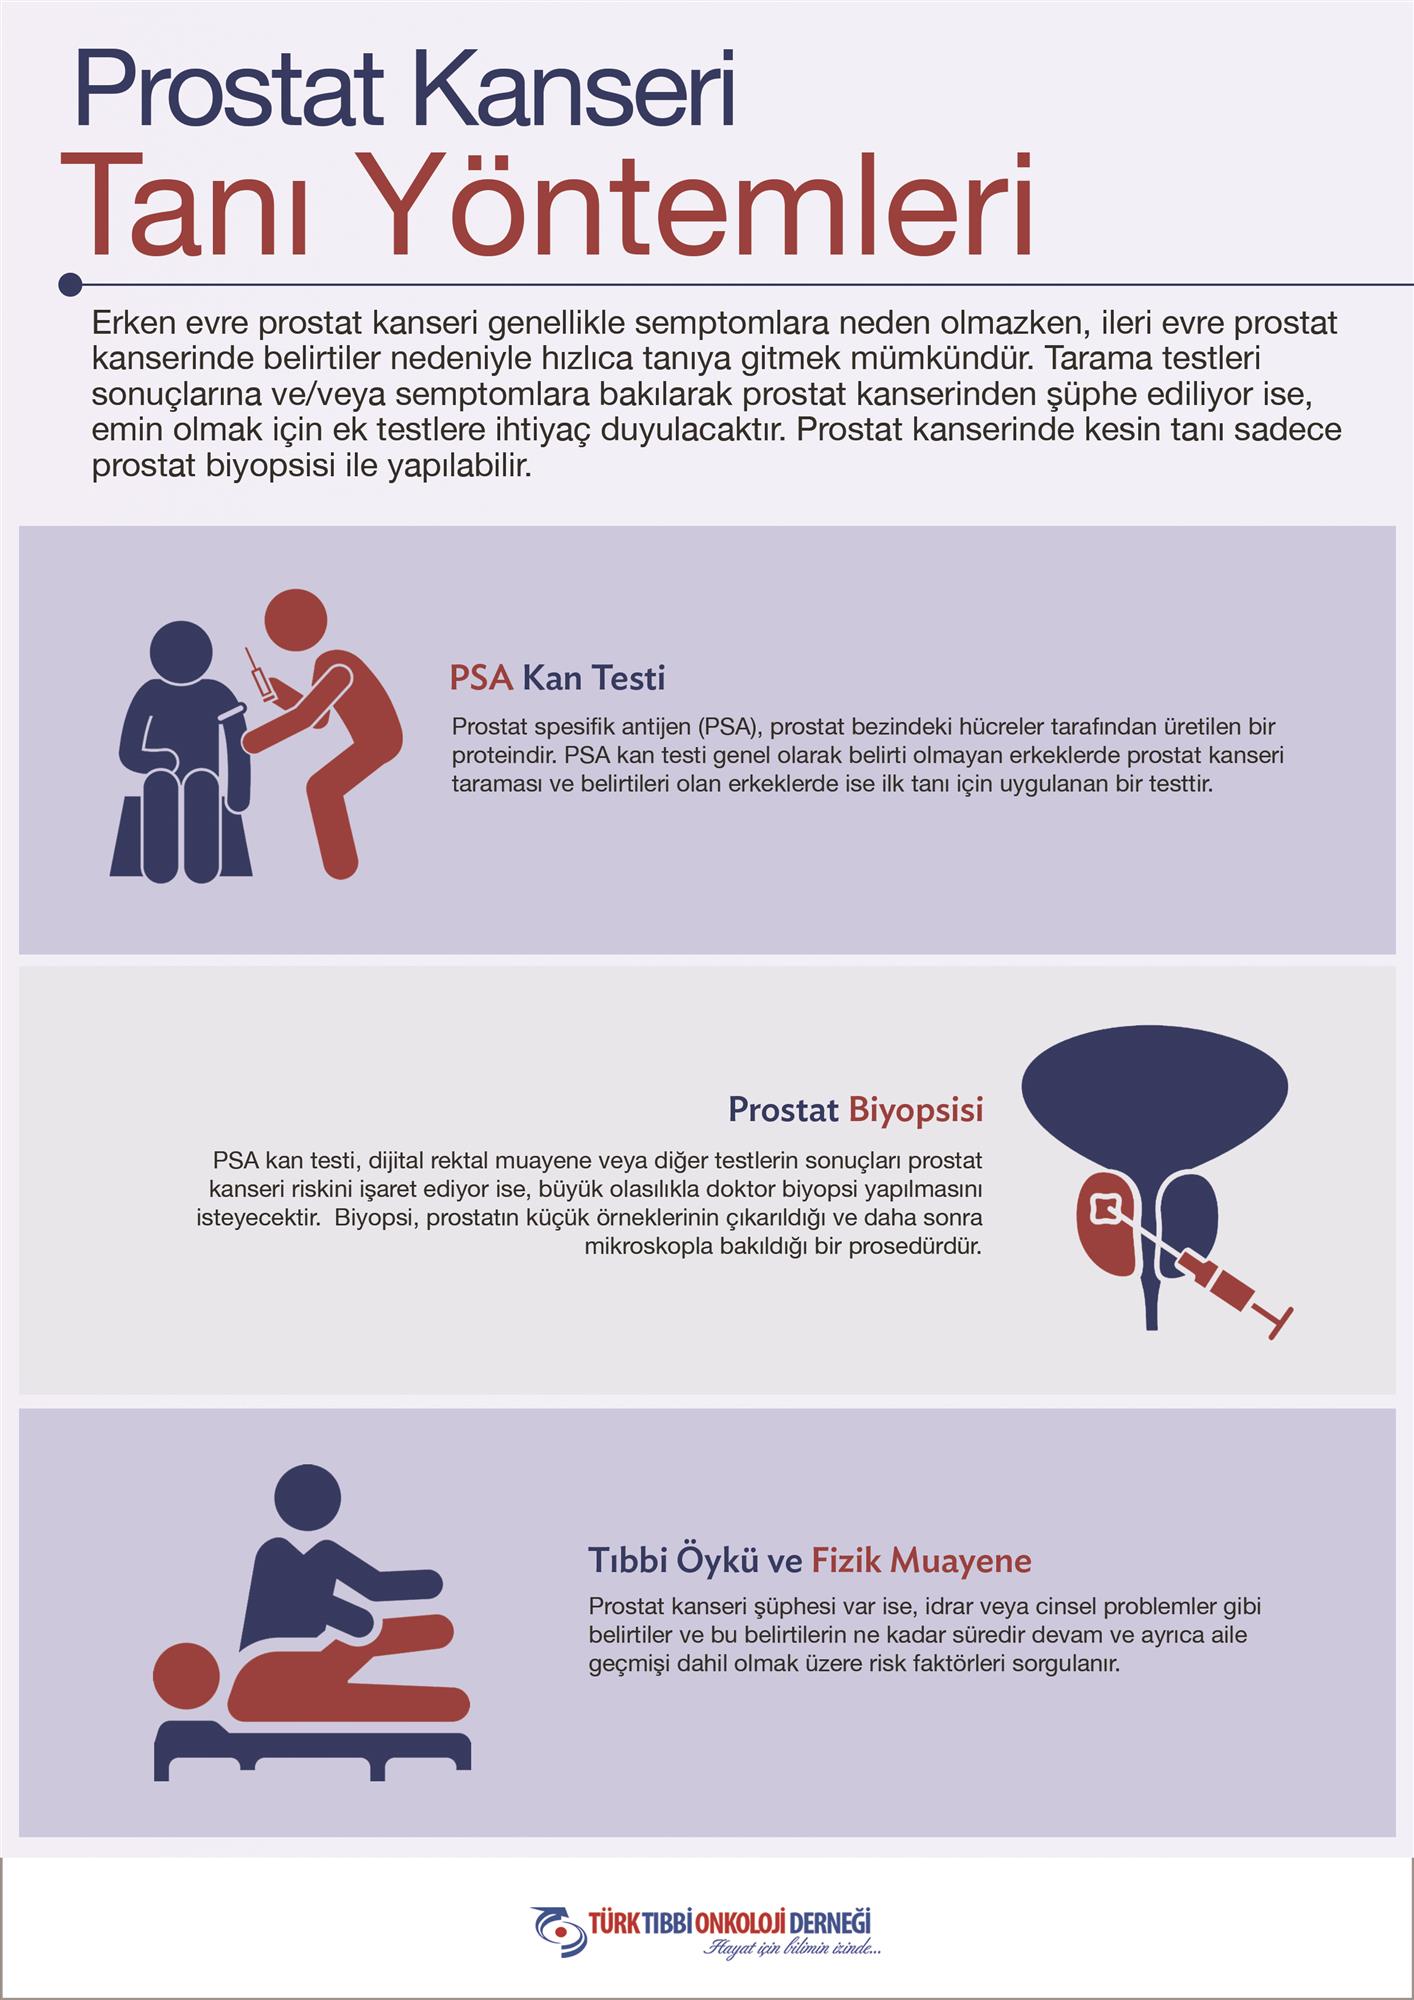 prostat-infografik-TaniYontemleri.jpg